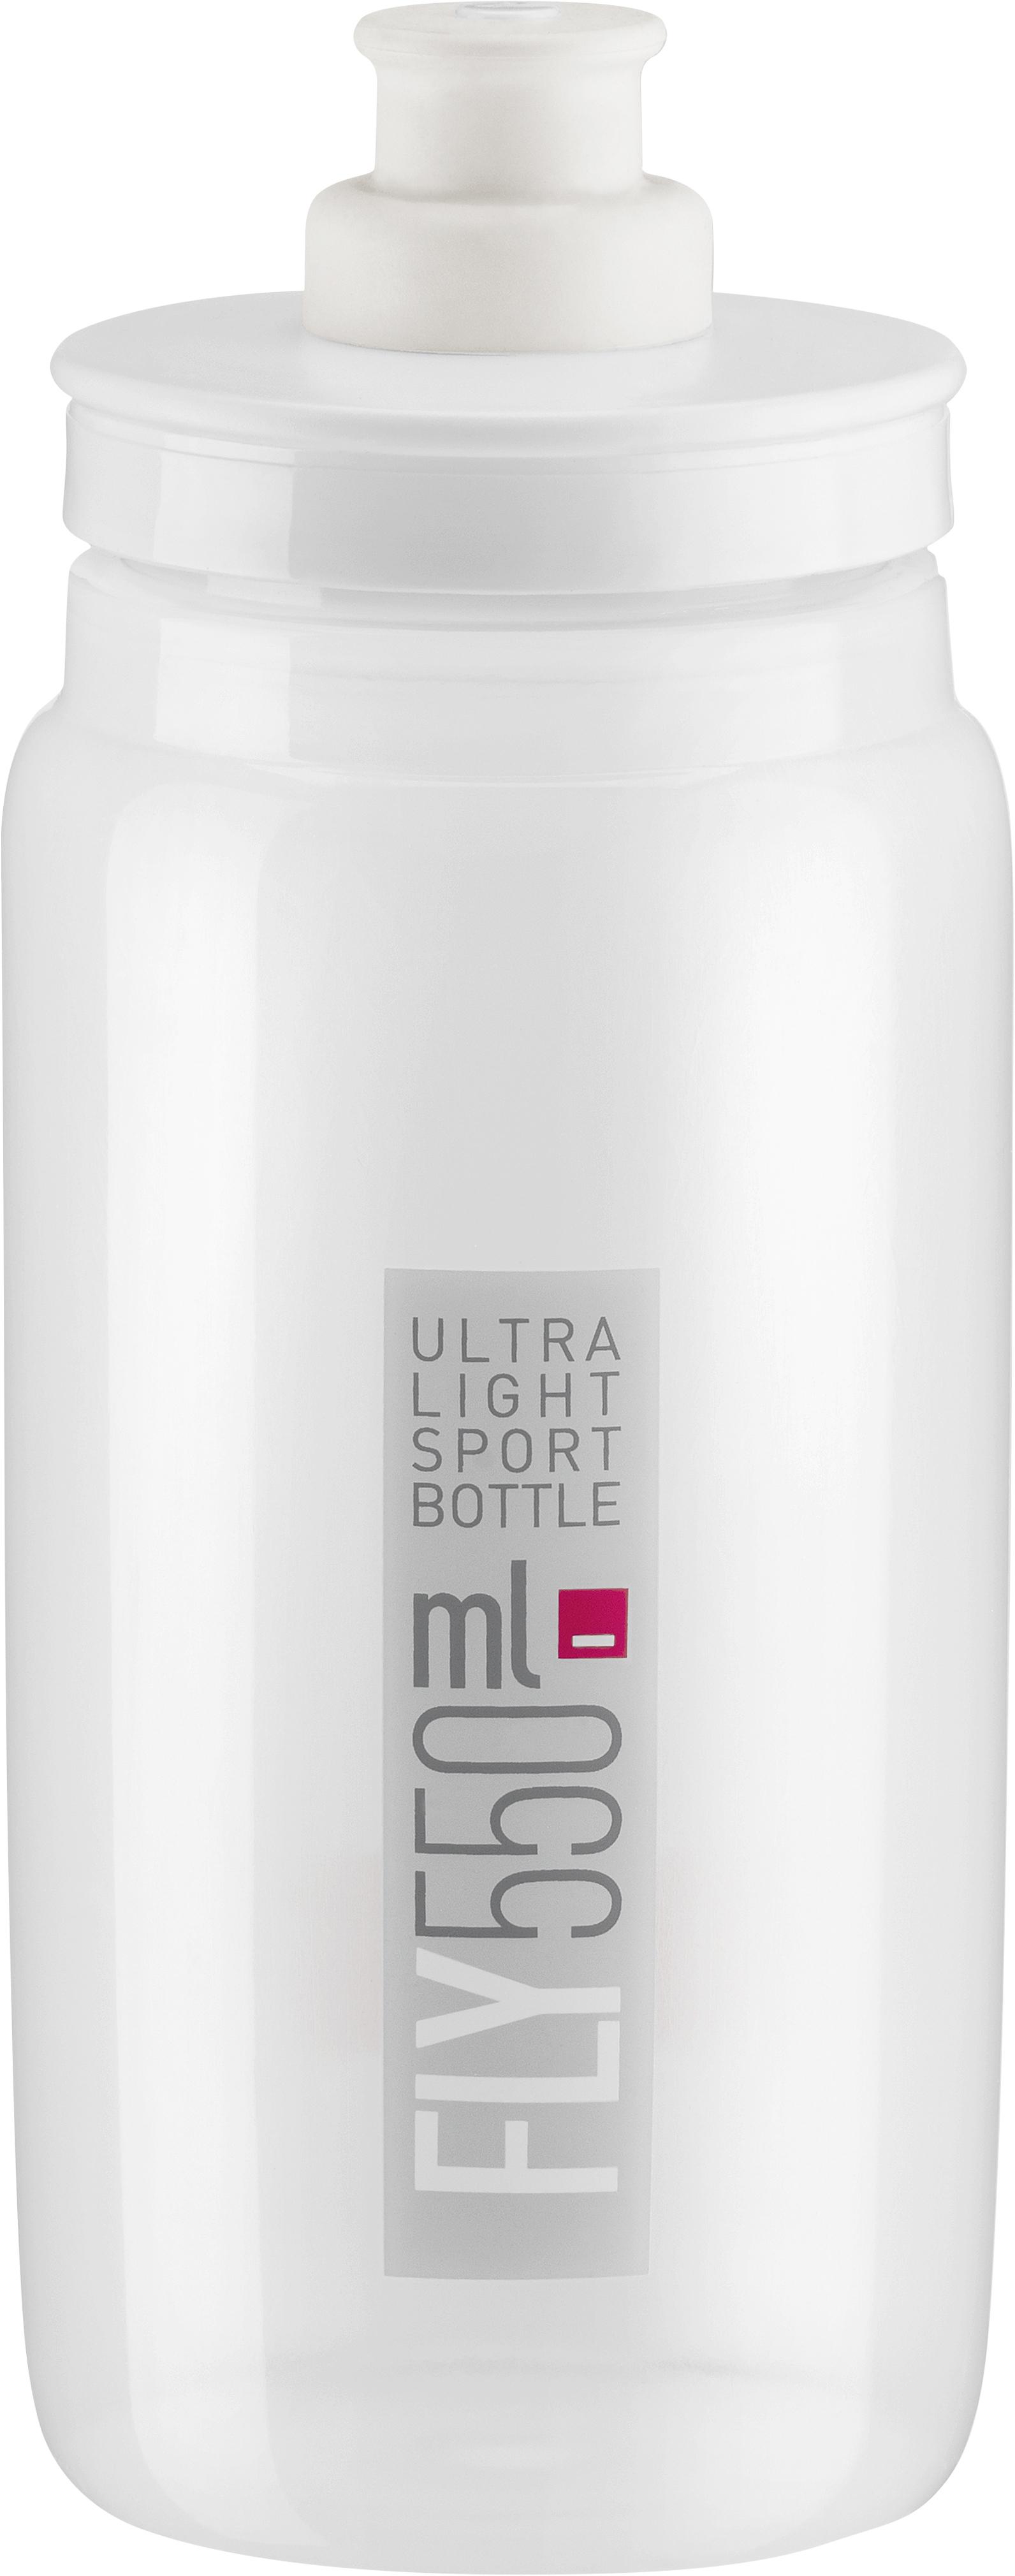 Elite Fly Water Bottle - Clear/Grey Logo, 550Ml